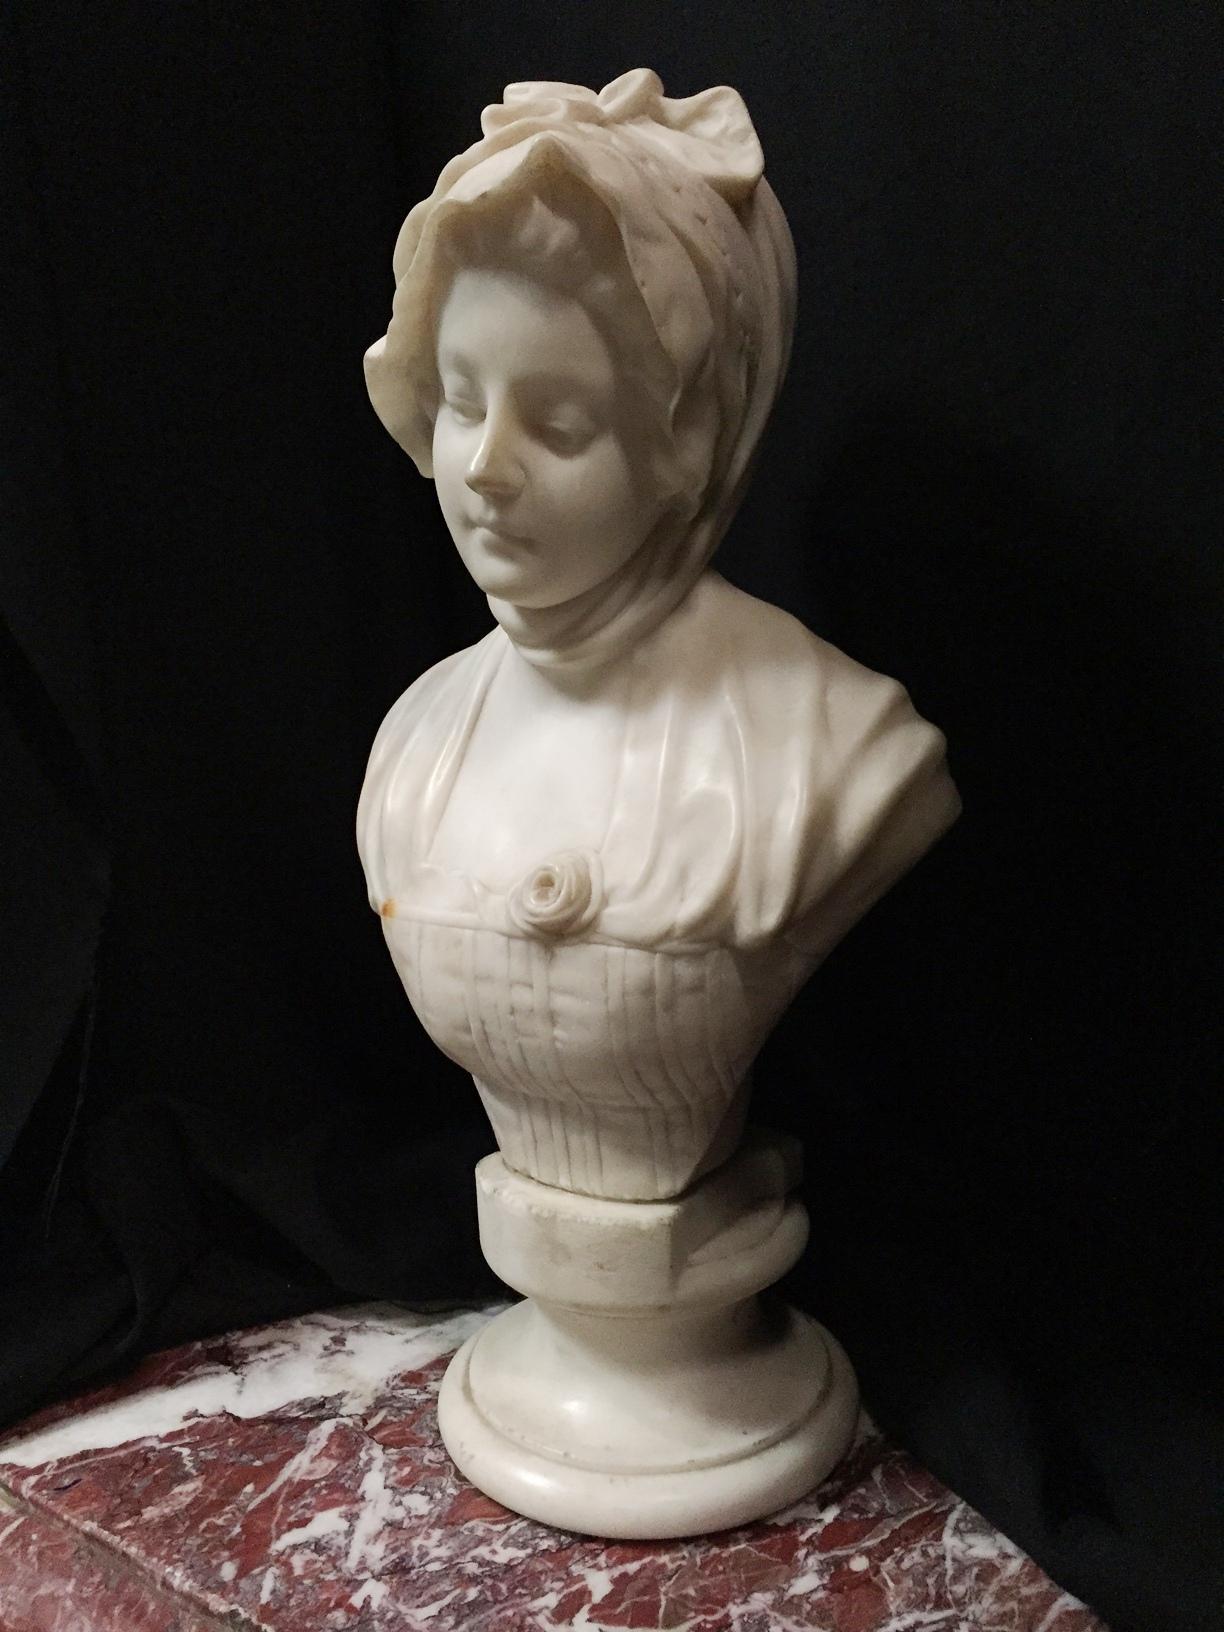 buste en marbre sculpté italien du XIXe siècle représentant une jeune fille en robe et coiffe classiques. Une attention méticuleuse est accordée aux détails du buste et surtout aux traits du visage.

Mesures : Diamètre de la base : D. 7